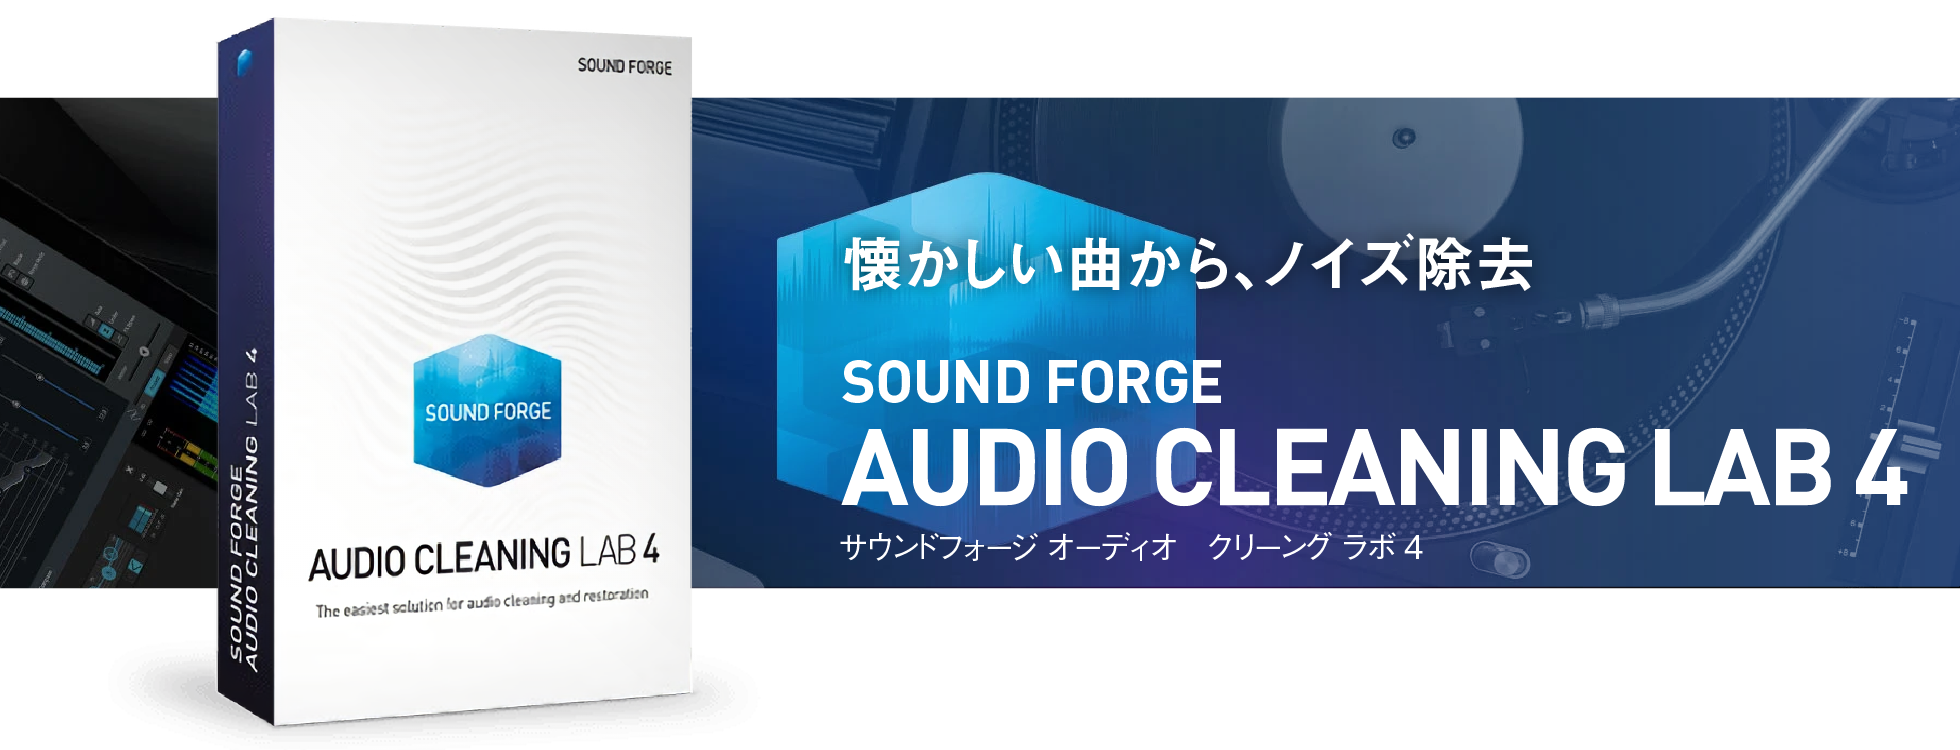 アナログ音源のデジタル化とノイズ除去「SOUND FORGE Audio Cleaning Lab 